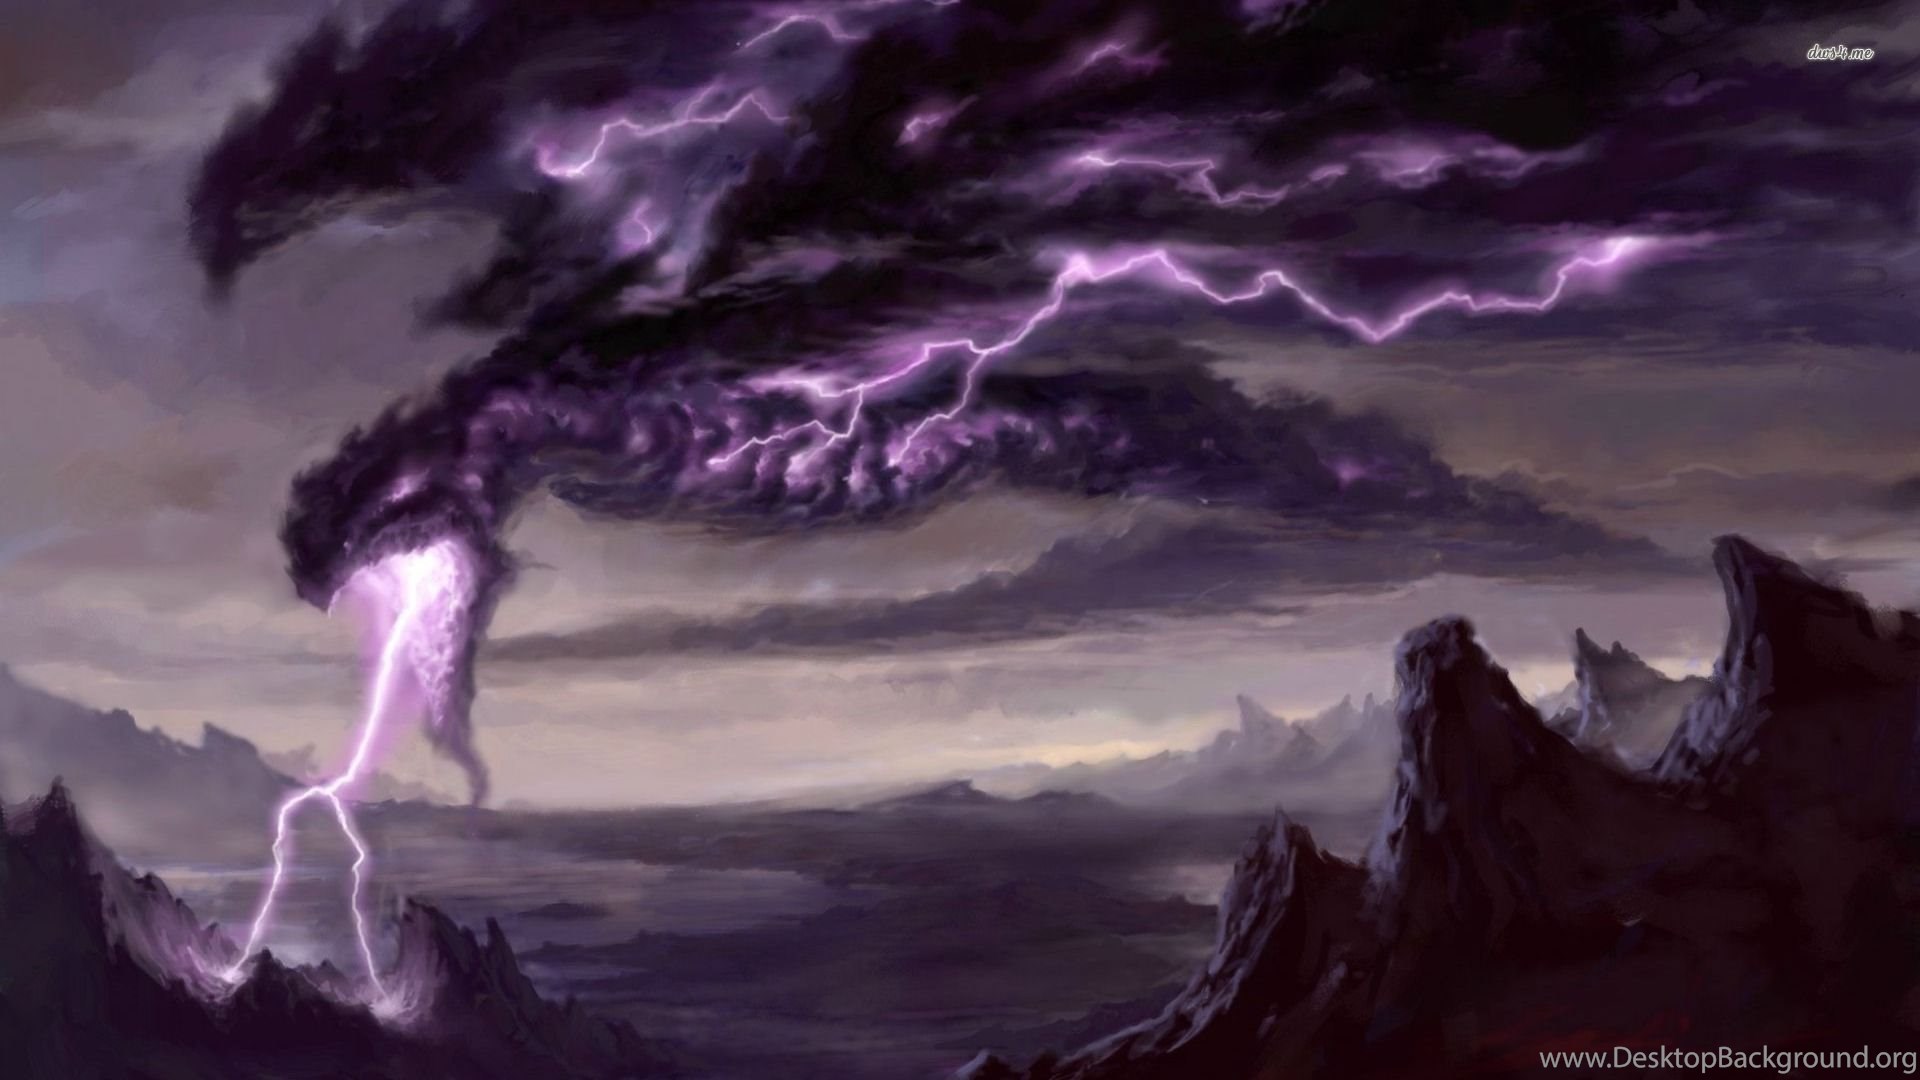 magic touch wallpaper,thunderstorm,lightning,thunder,sky,cg artwork